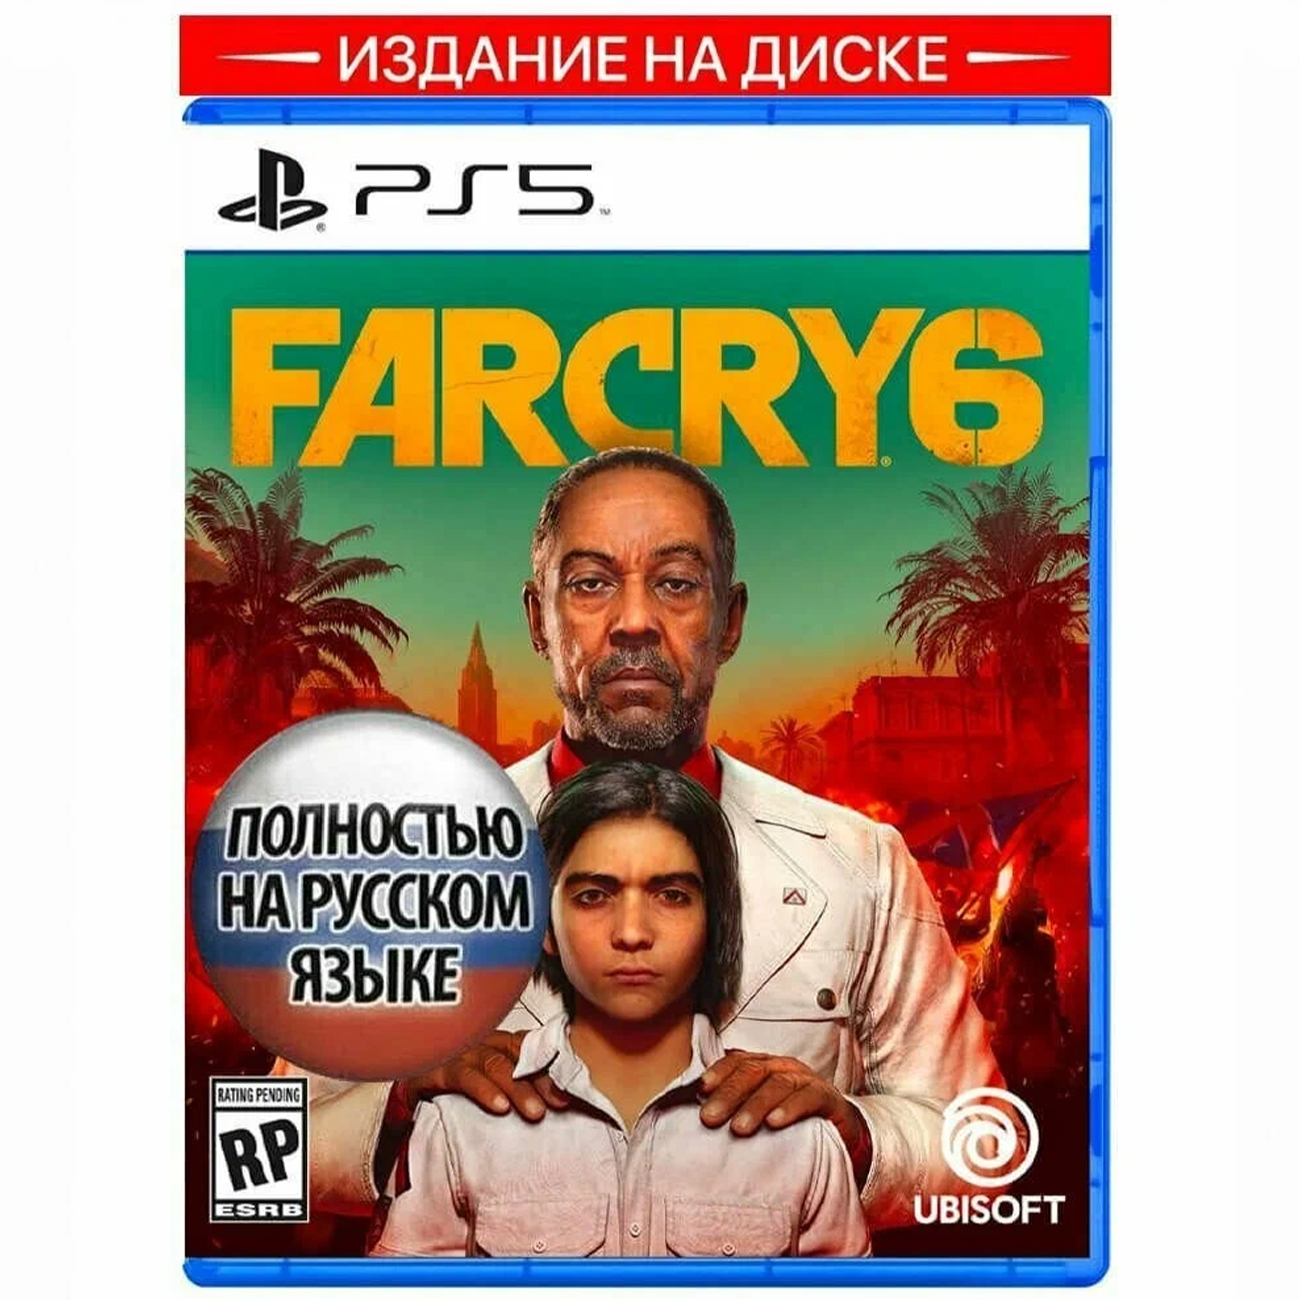 Игра: Far Cry 6 для PS5 (диск, русская озвучка)